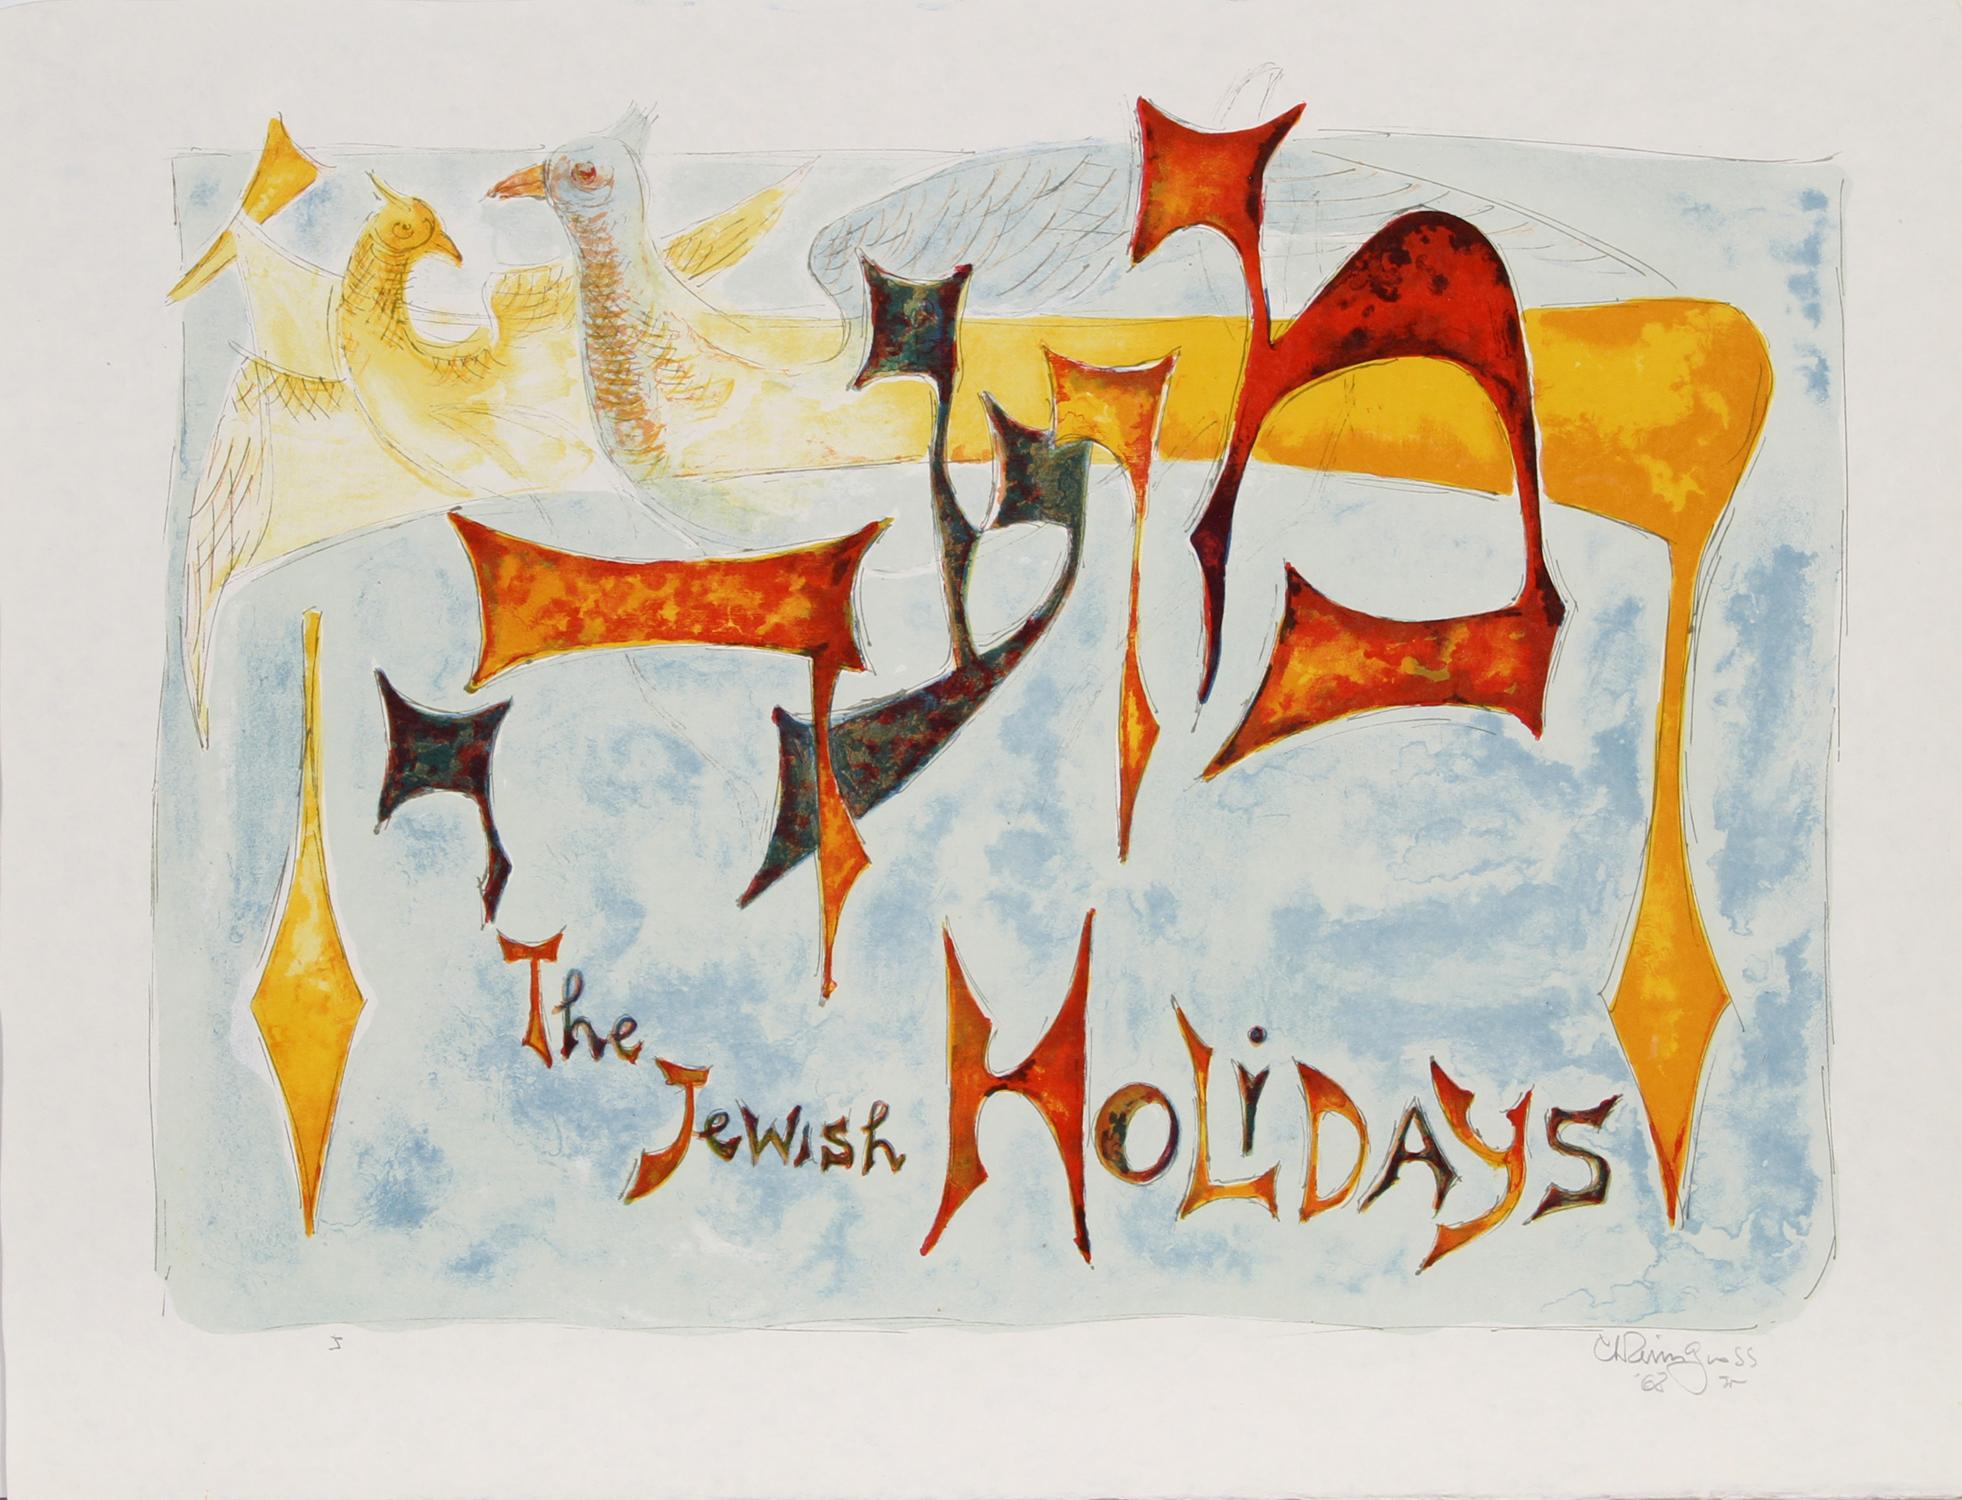 Die Mappe Jüdische Feiertage von Chaim Gross.  Diese Mappe besteht aus 11 Farblithografien und 11 Schwarzweißlithografien derselben Bilder, die 11 jüdische Feiertage darstellen, sowie Deckblättern und Kolophon.  Jeder der Drucke ist mit Bleistift